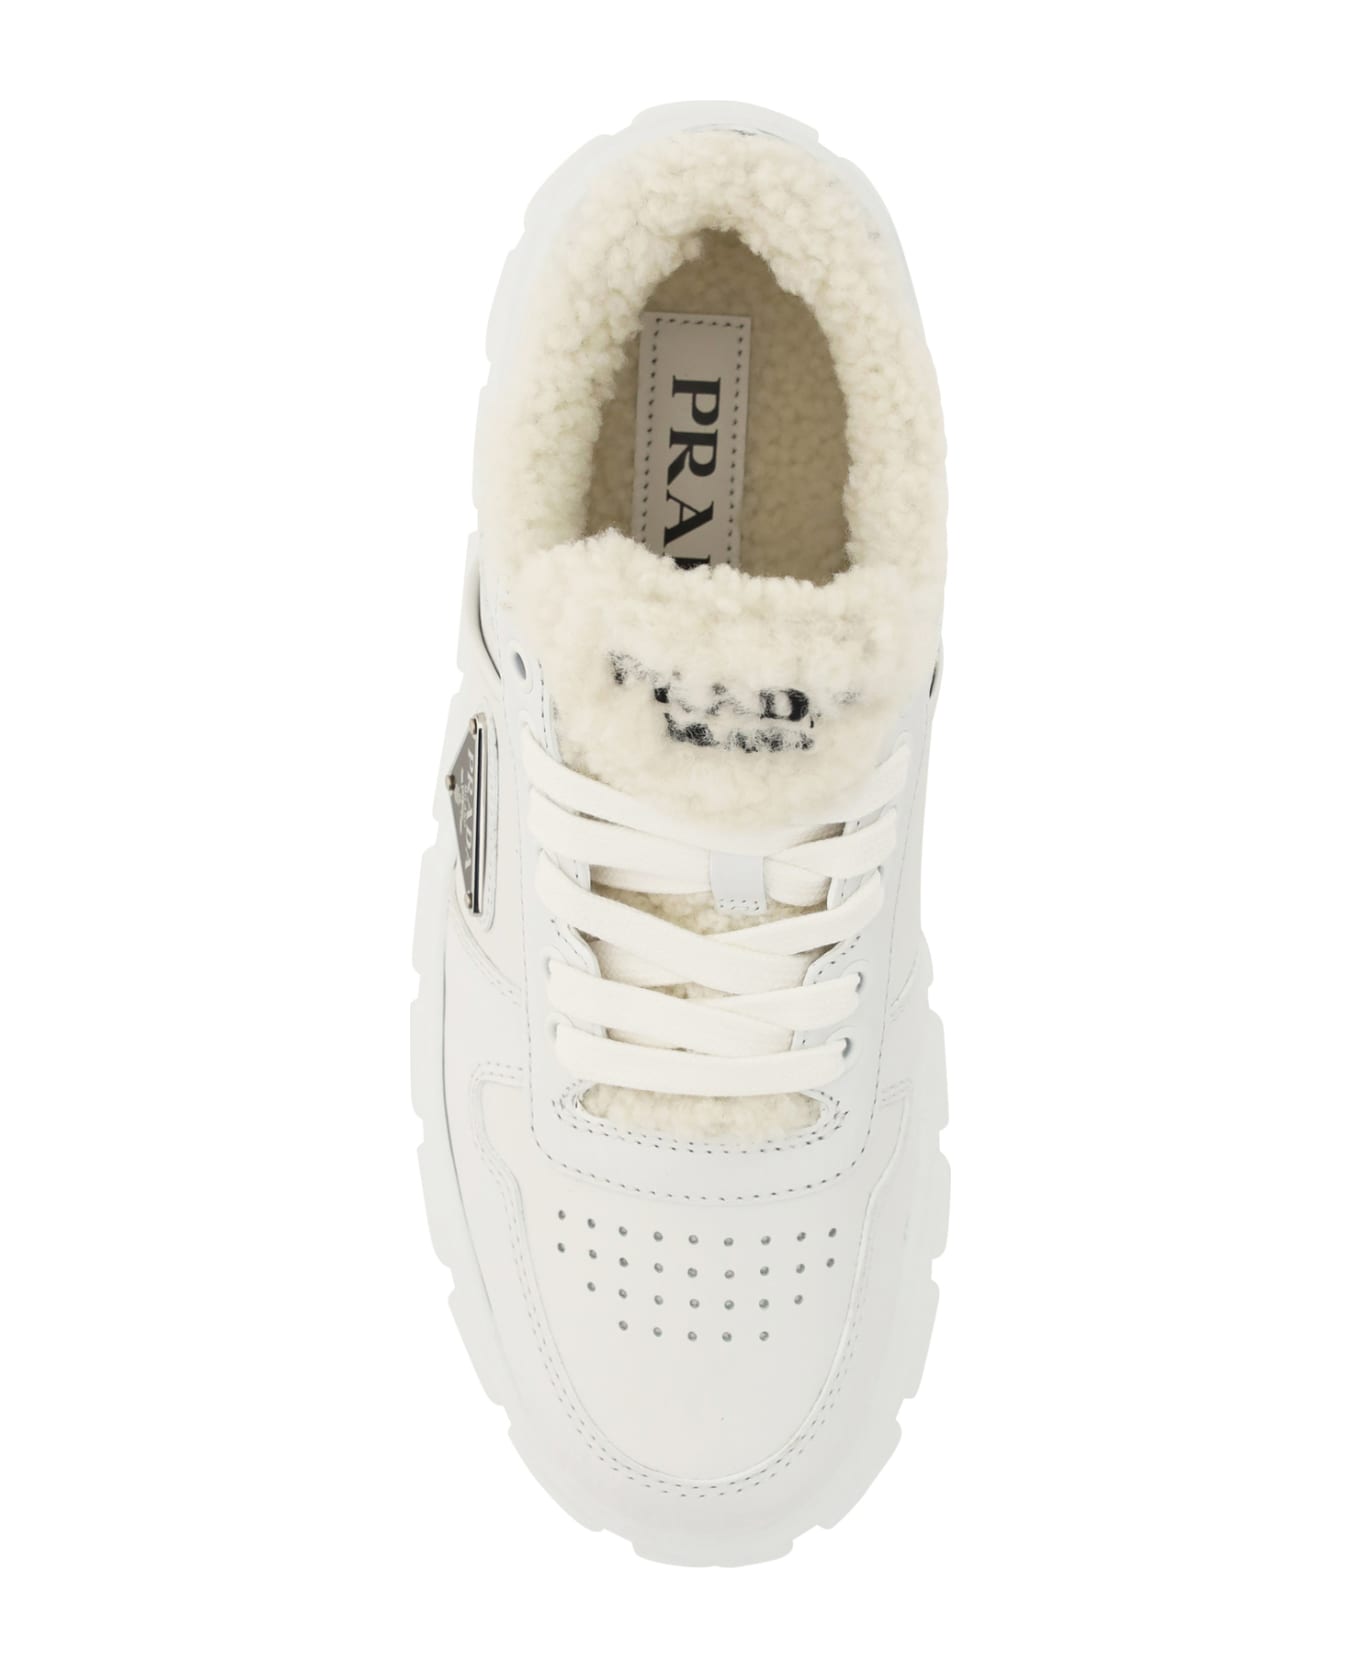 Prada Winter Sneakers - Bianco